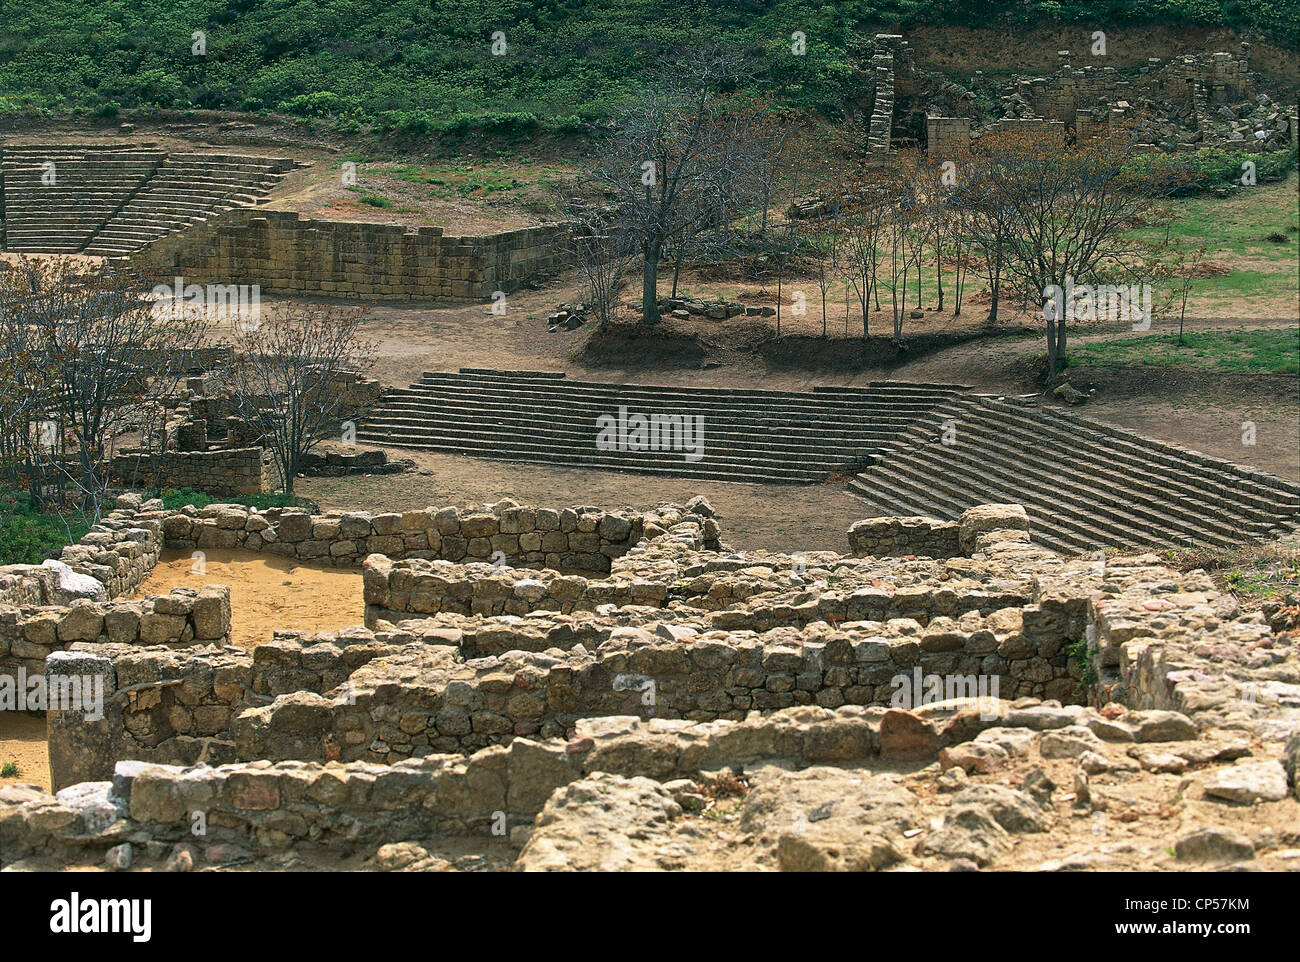 Sicily - The archaeological site of Morgantina (En), Roman ruins. Stock Photo